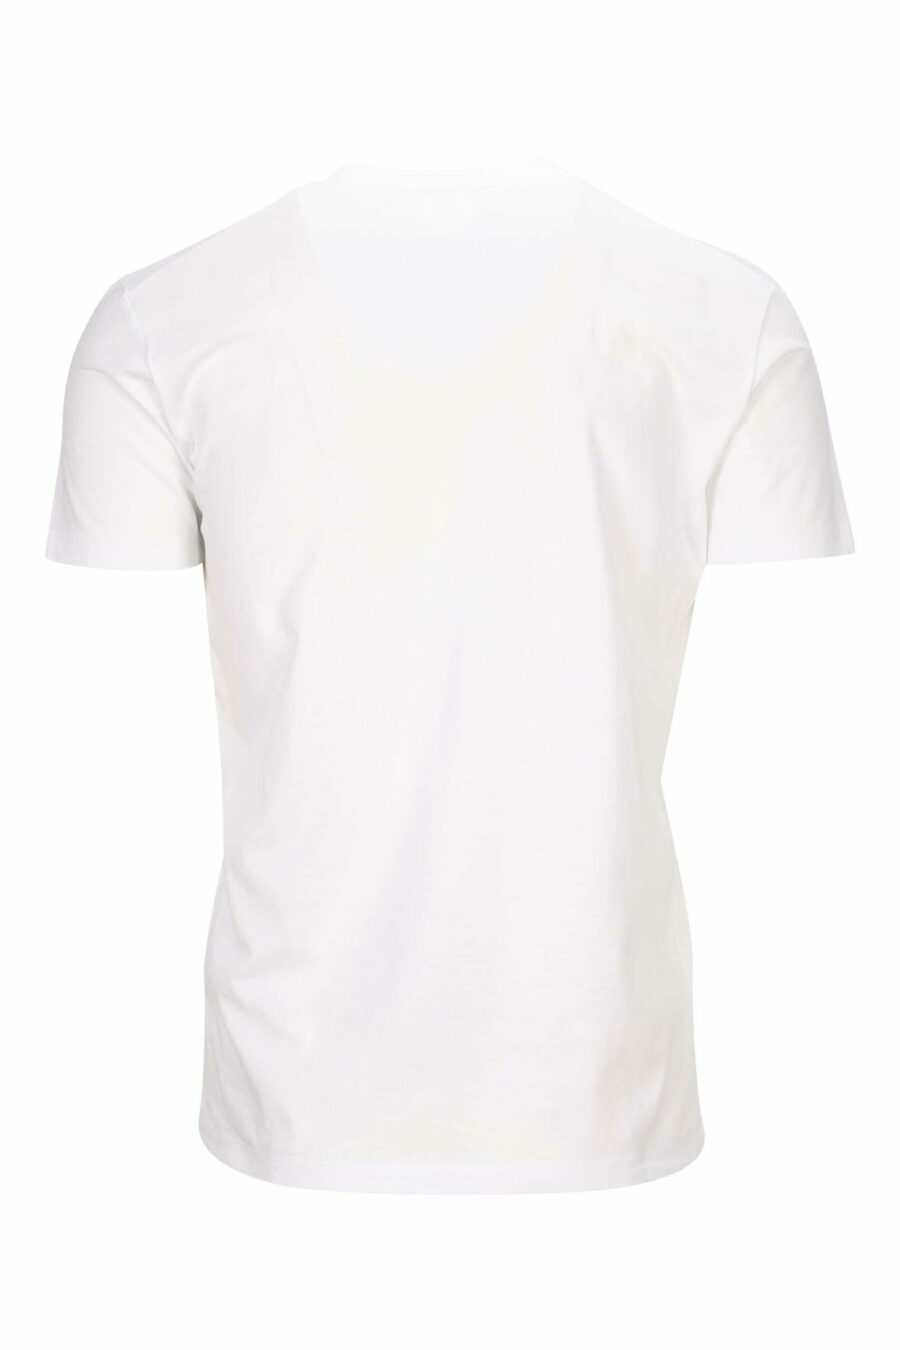 Camiseta blanca con maxilogo "icon" garabatos - 8054148362829 1 scaled